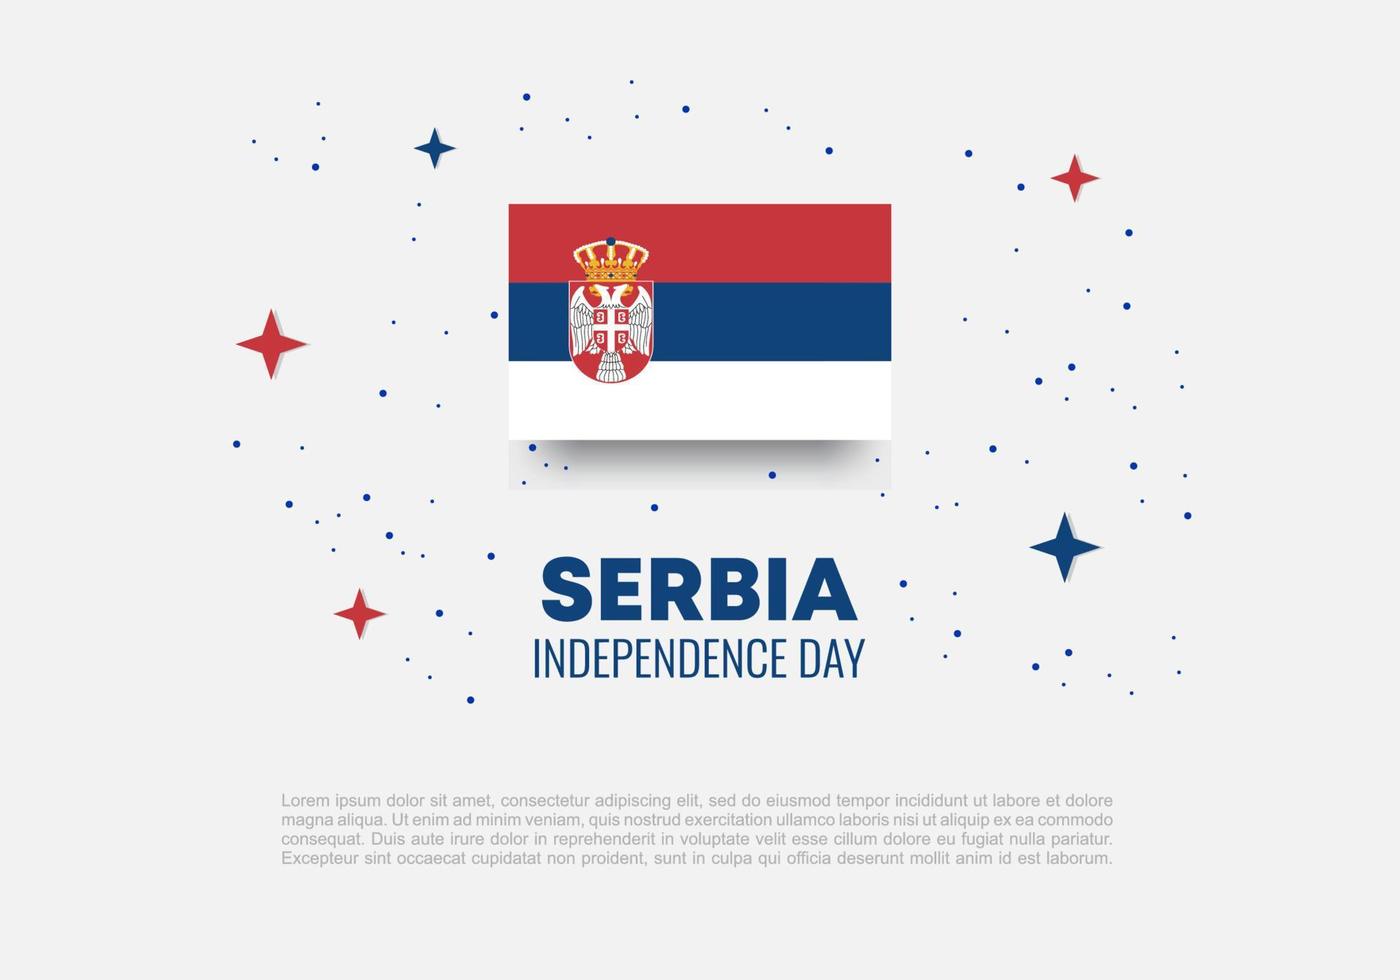 dia da independência da sérvia para celebração nos dias 15 e 16 de fevereiro. vetor